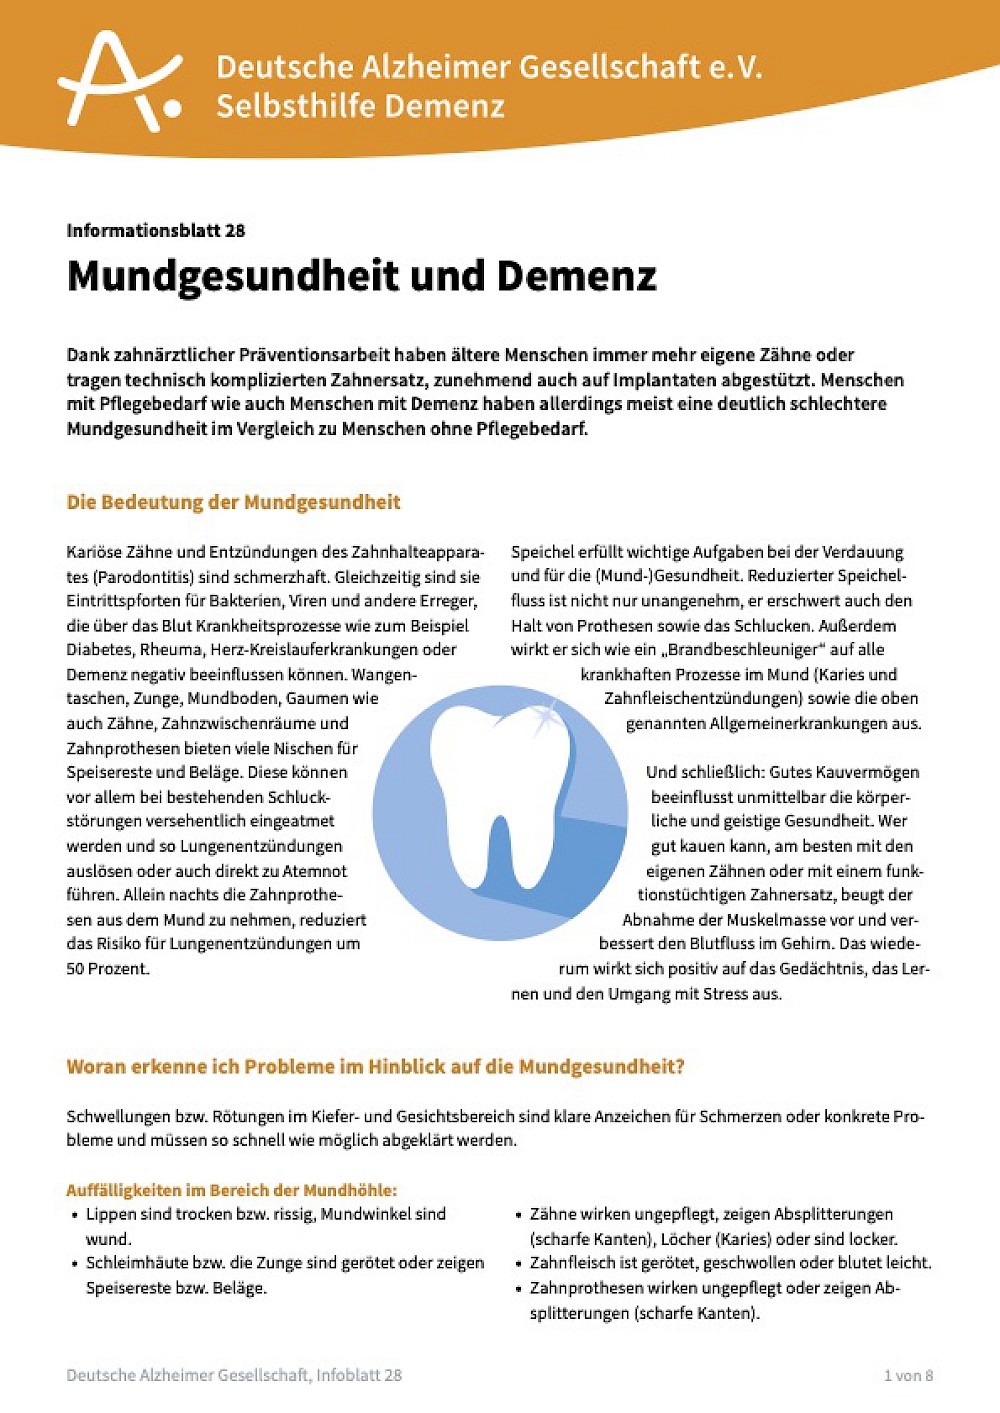 Infoblatt "Mundgesundheit und Demenz"